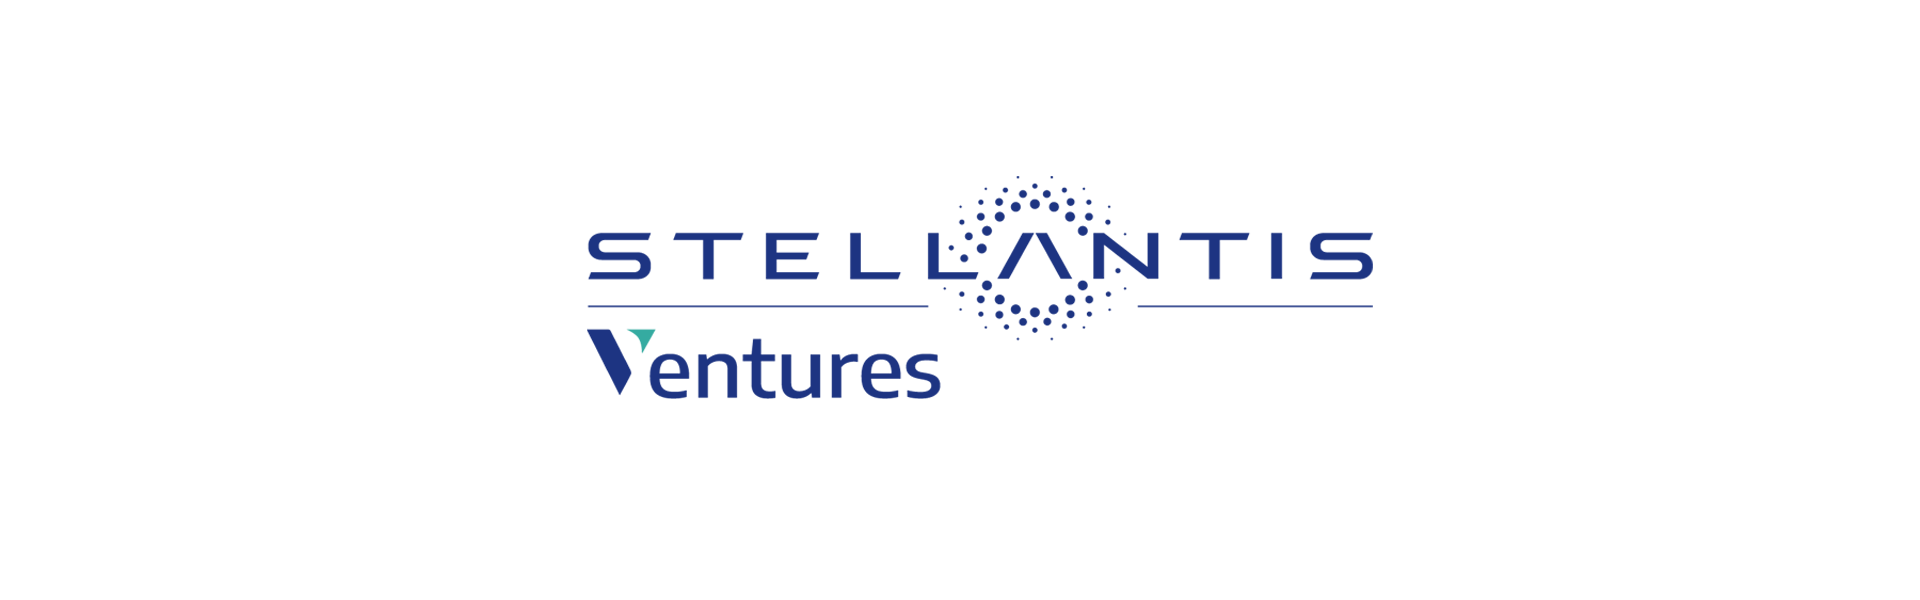 Image of Stellantis Ventures logo